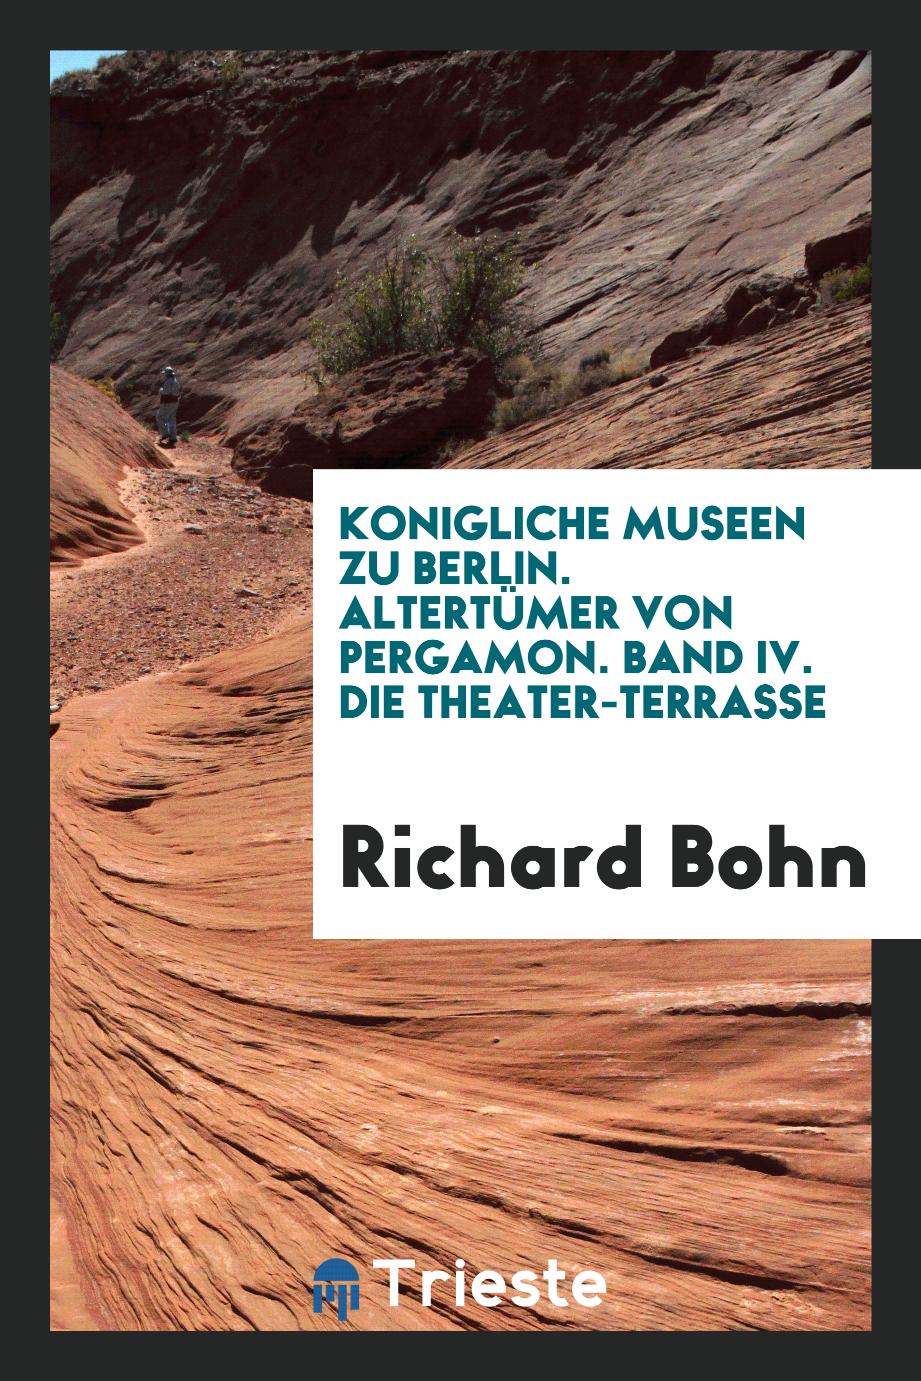 Richard Bohn - Konigliche Museen zu Berlin. Altertümer von Pergamon. Band IV. Die Theater-Terrasse